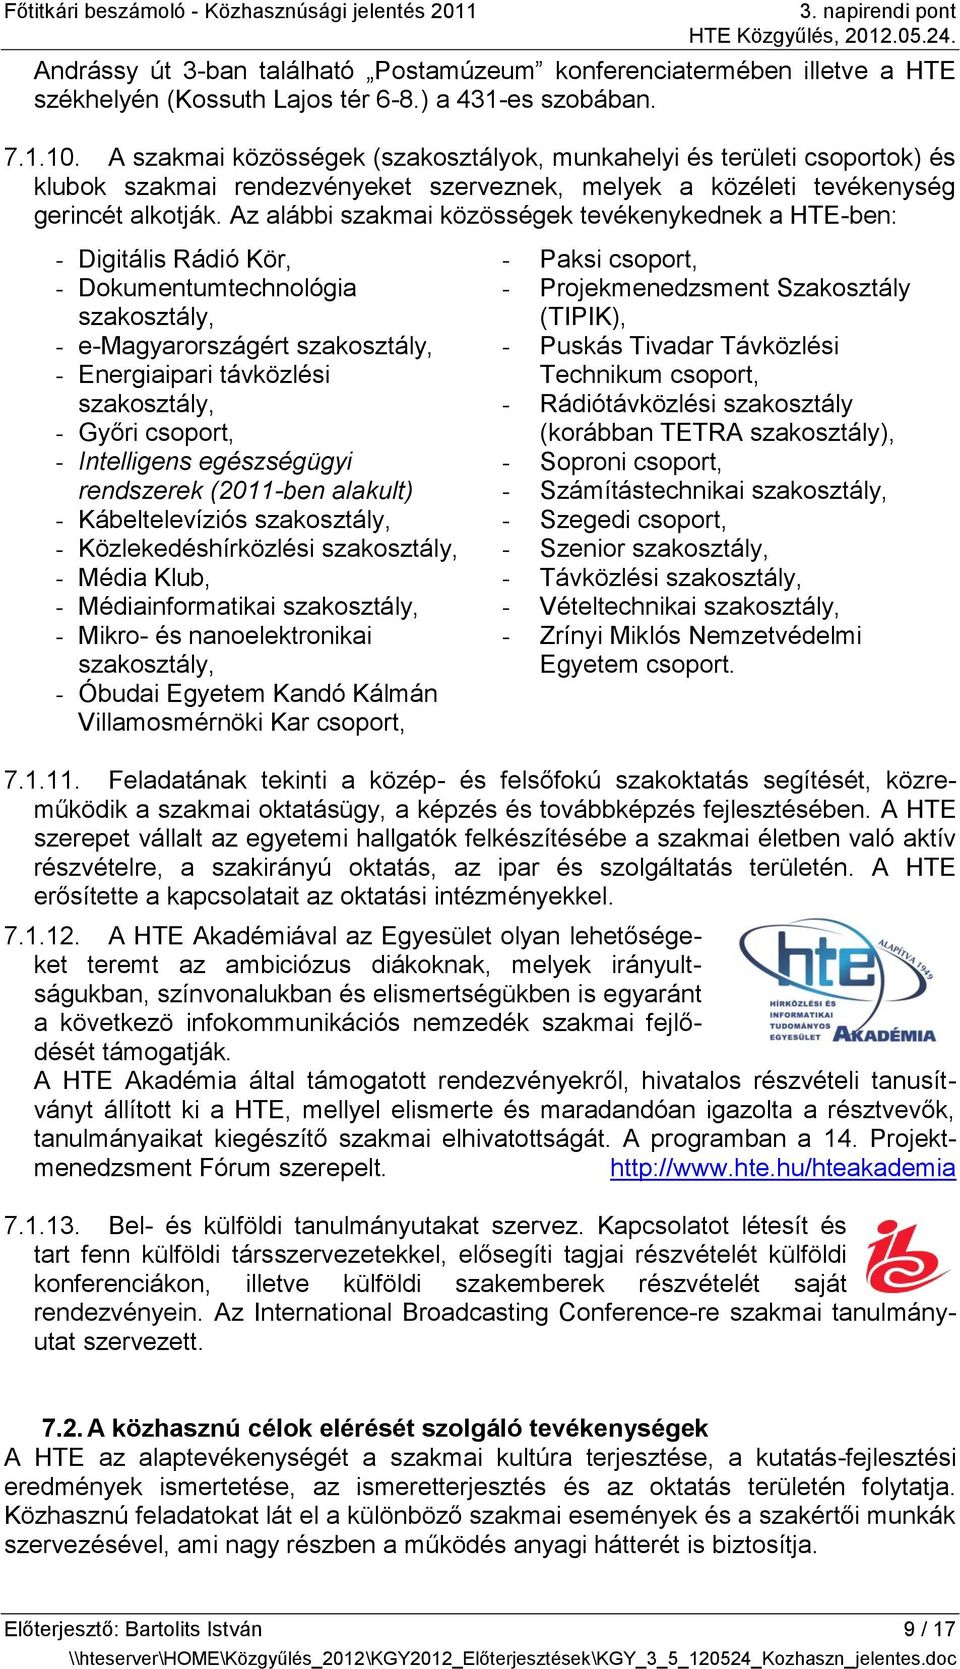 Az alábbi szakmai közösségek tevékenykednek a HTE-ben: - Digitális Rádió Kör, - Dokumentumtechnológia szakosztály, - e-magyarországért szakosztály, - Energiaipari távközlési szakosztály, - Győri